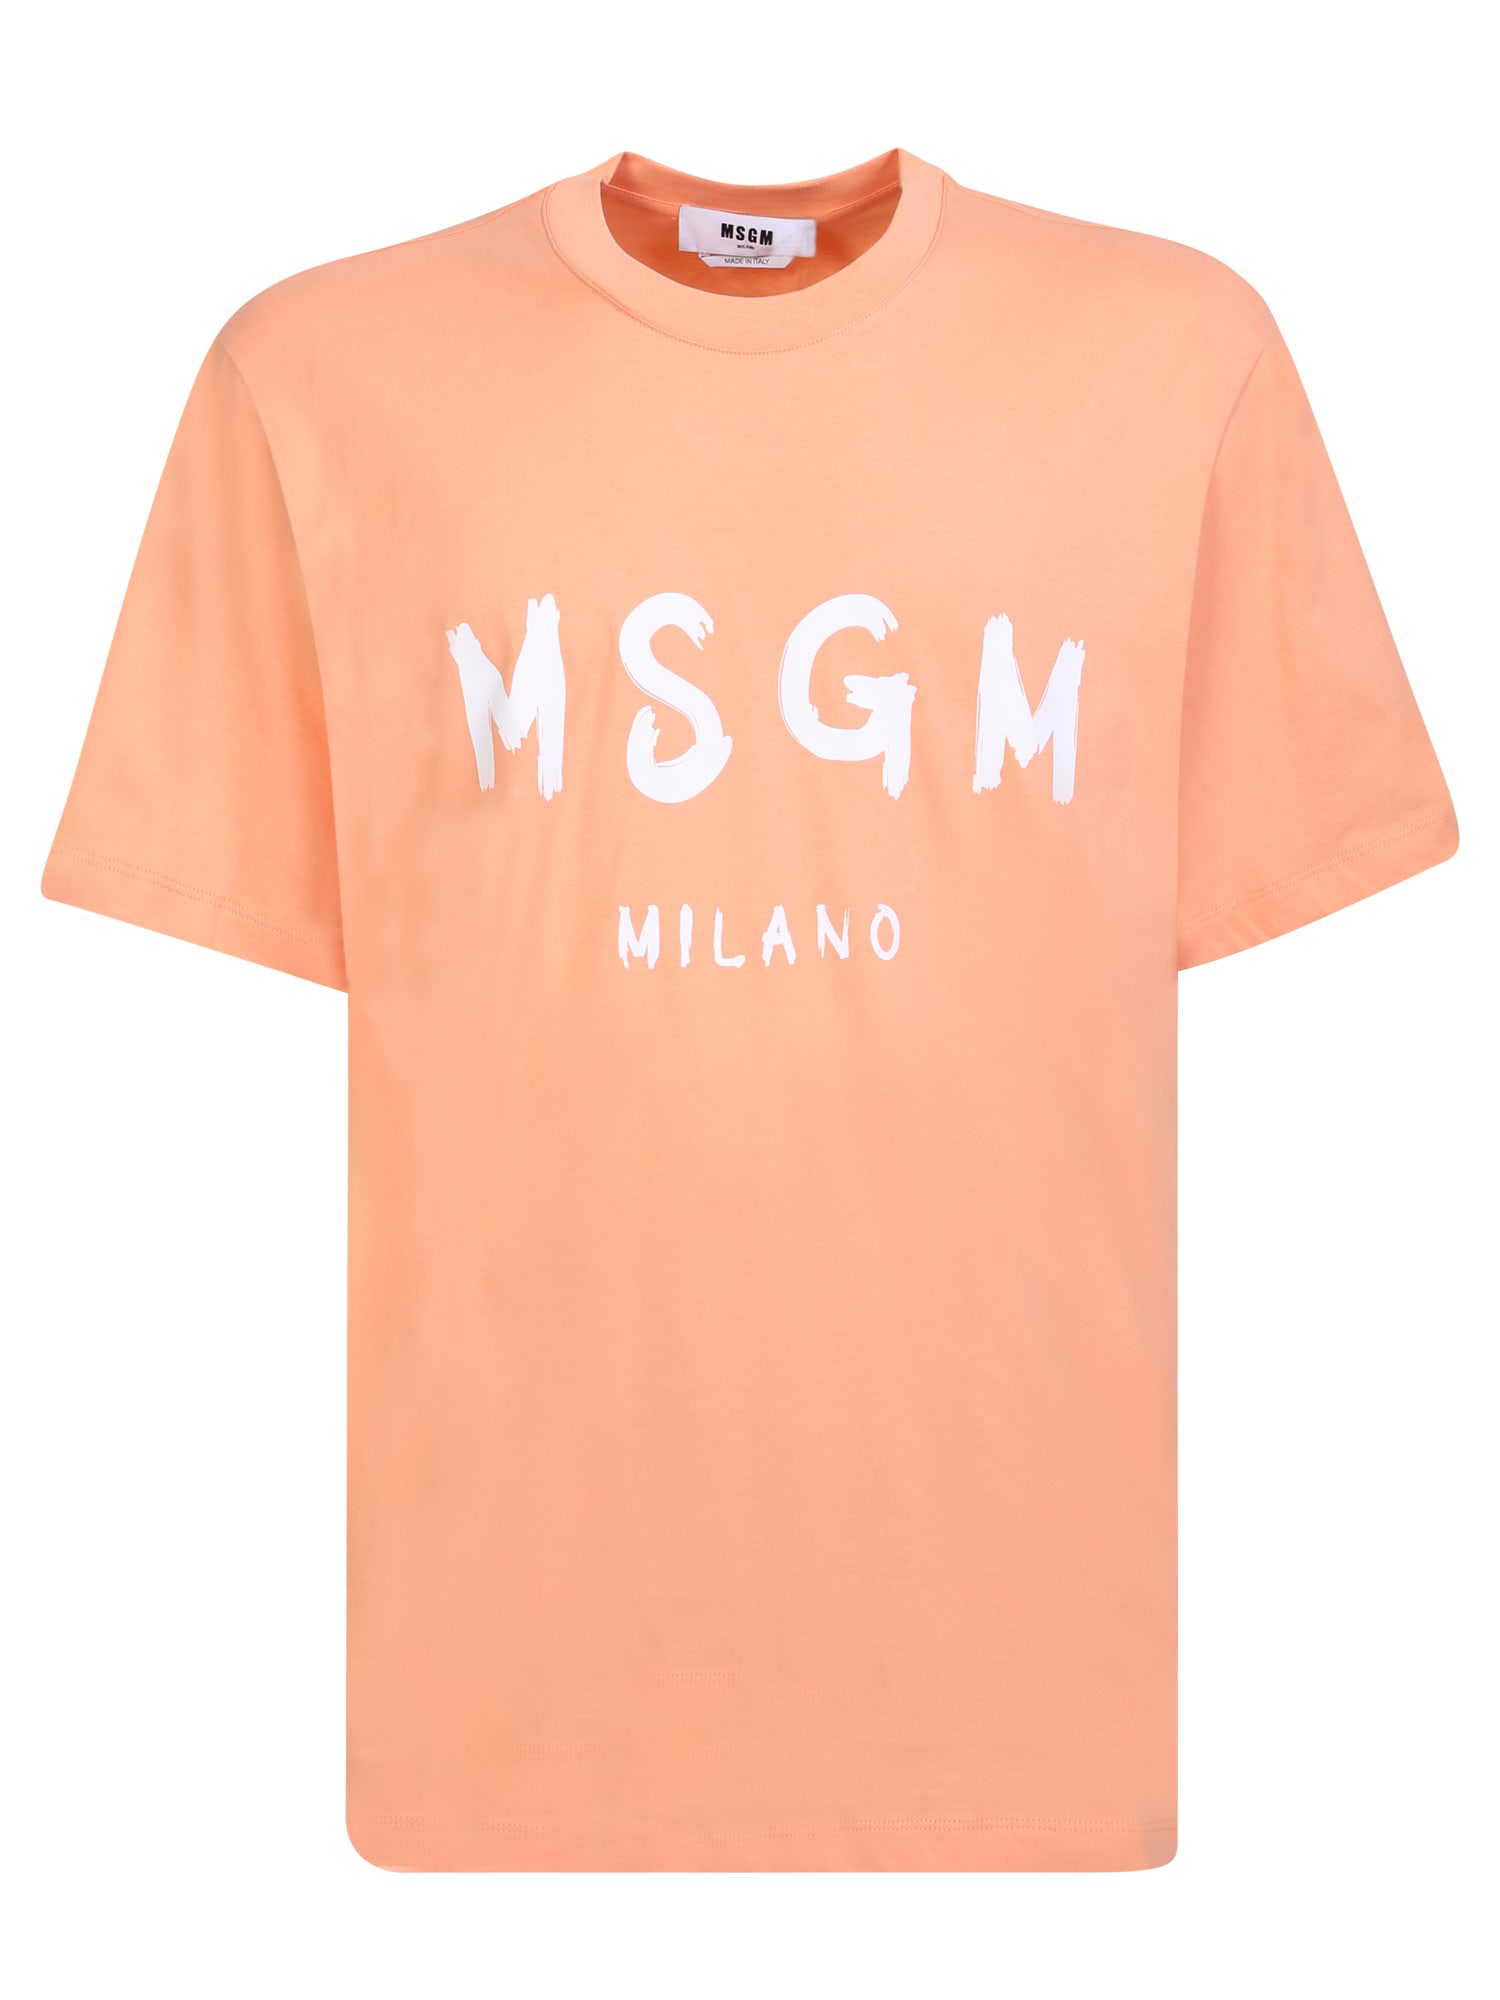 Msgm Logo Orange And White T-shirt | ModeSens